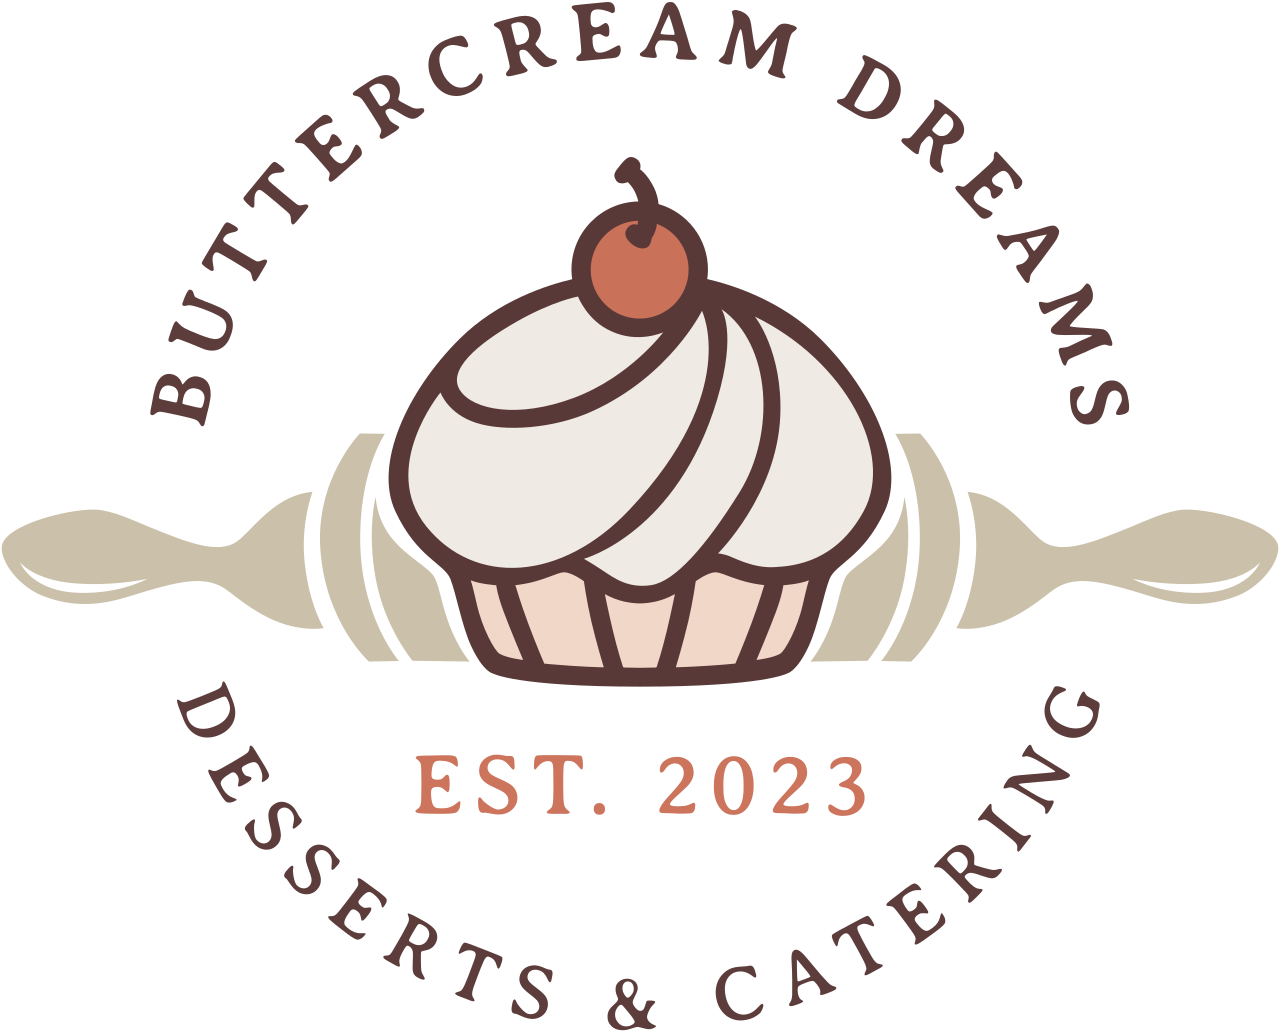 BUTTERCREAM DREAMS's logo